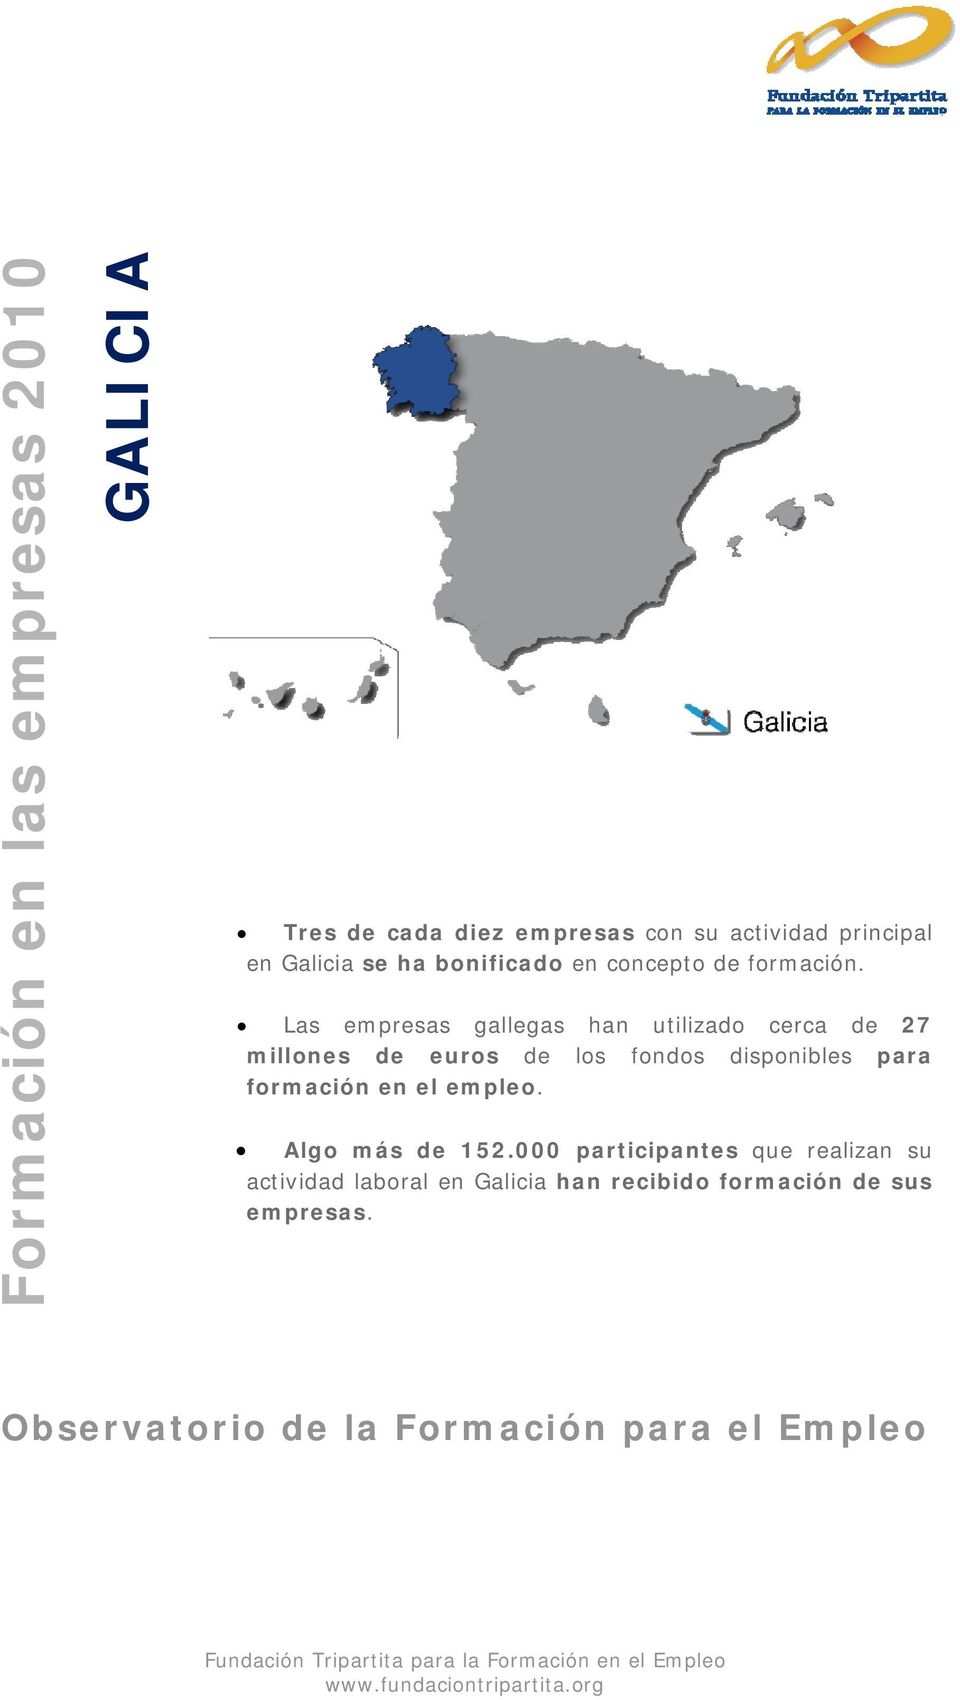 Las empresas gallegas han utilizado cerca de 27 millones de euros de los fondos disponibles para formación en el empleo.